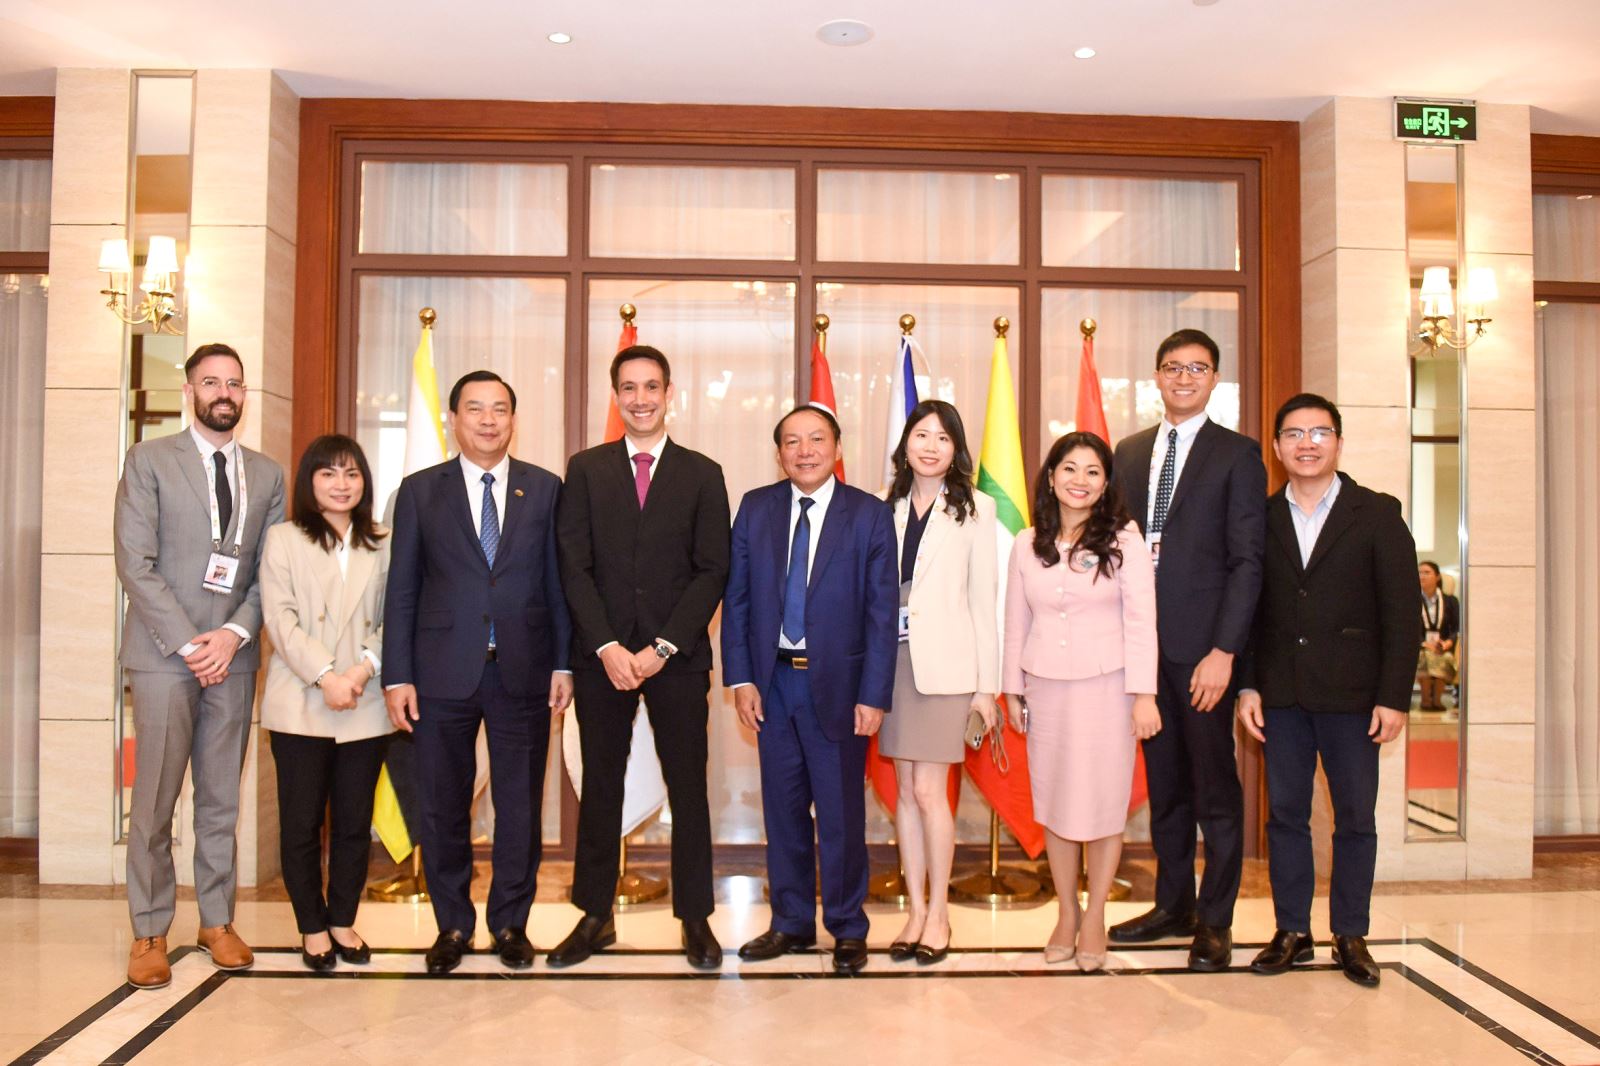 Bộ trưởng Nguyễn Văn Hùng: kỳ vọng Agoda liên kết với nhiều tỉnh thành của Việt Nam để phát triển du lịch theo hướng bền vững